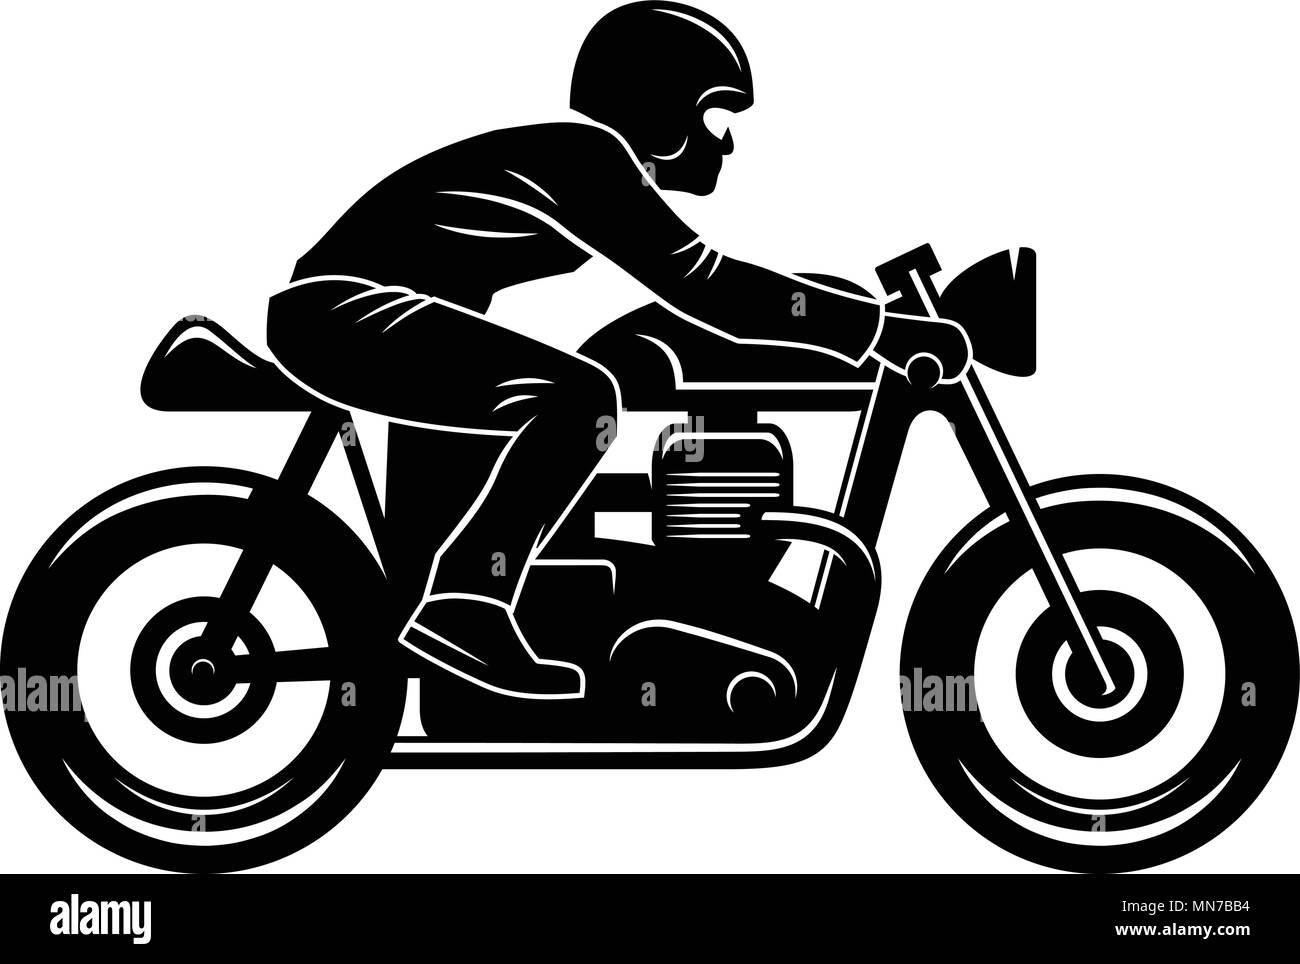 Cafe Racer silhouette isolato su bianco / motociclista / Vintage t-shirt graphic design / grafica Tee Illustrazione Vettoriale